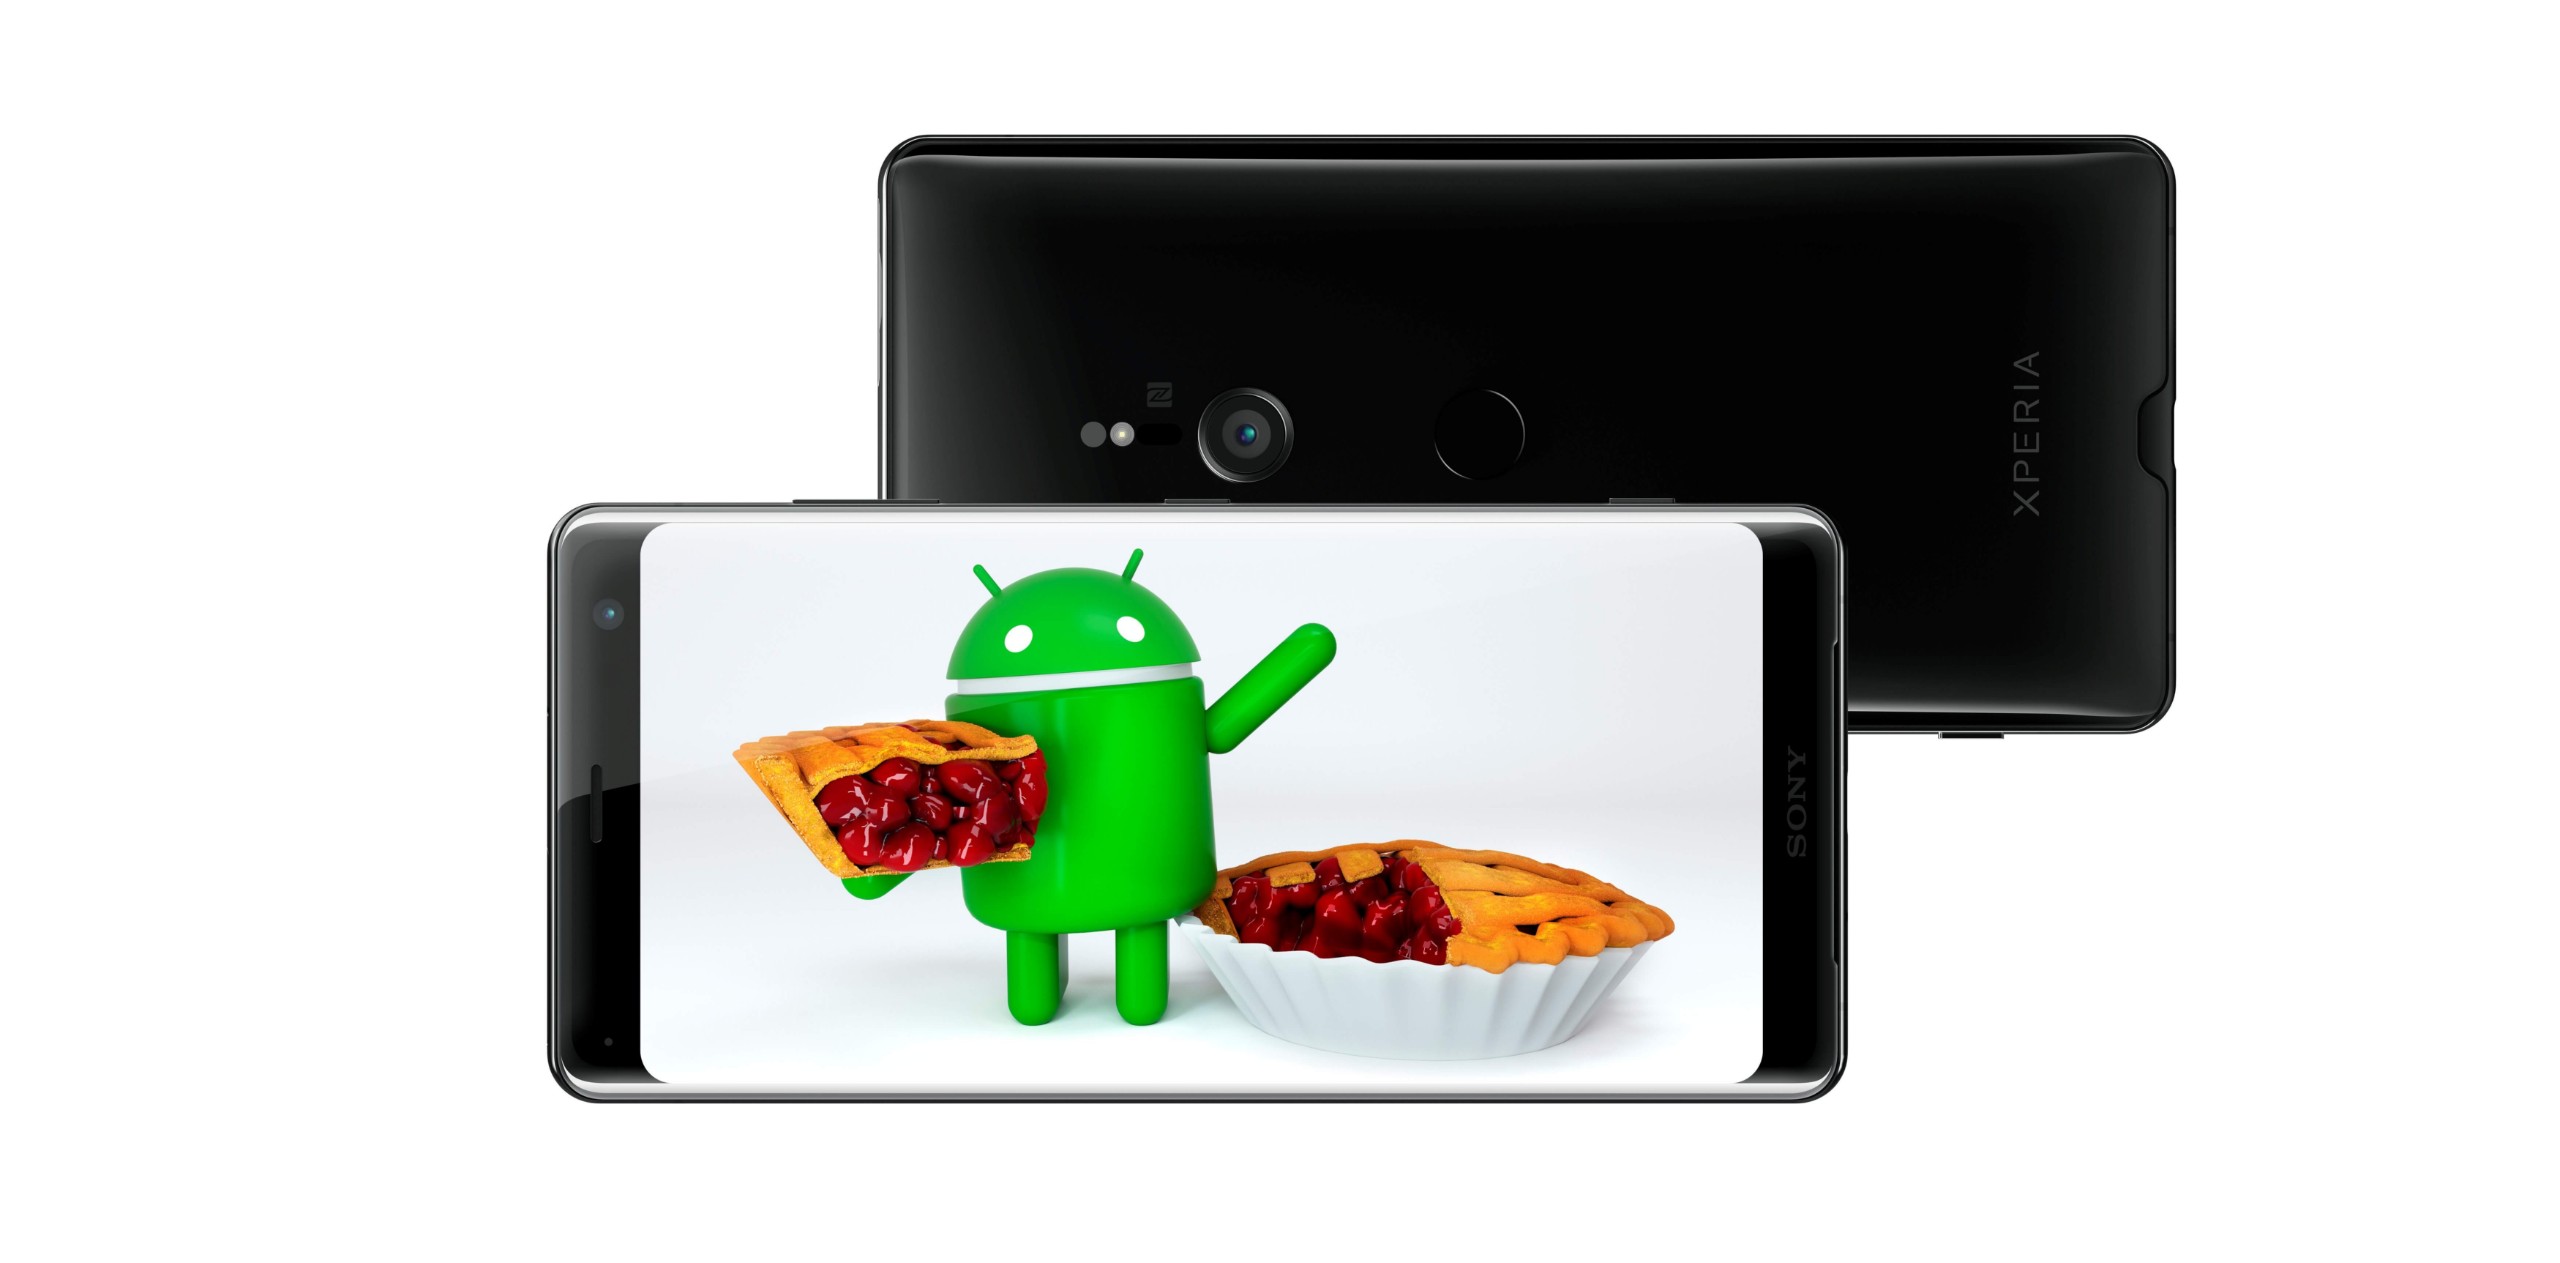 Sony anuncia nuevas fechas de lanzamiento de Android Pie para Xperia XZ1, XZ y XZ2 Premium, XA2, XA2 Ultra y XA2 Plus